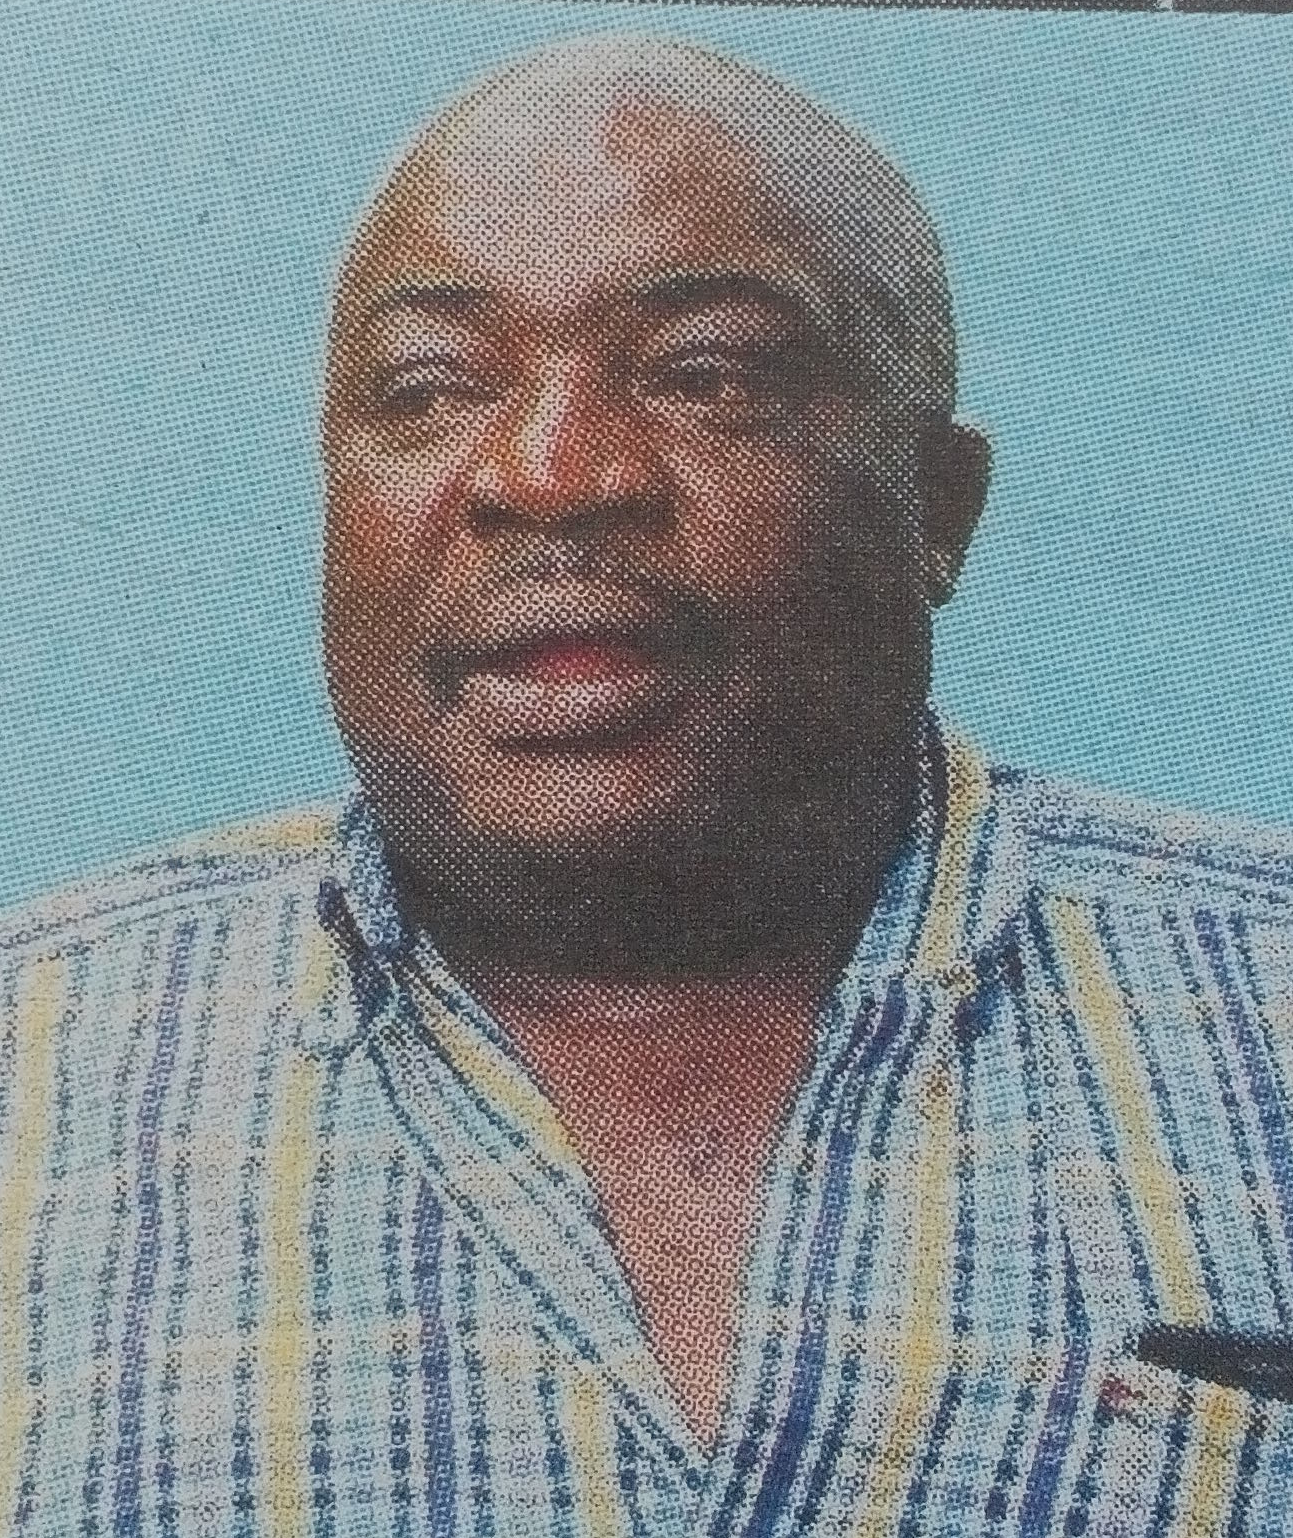 Obituary Image of John Mwirotsi